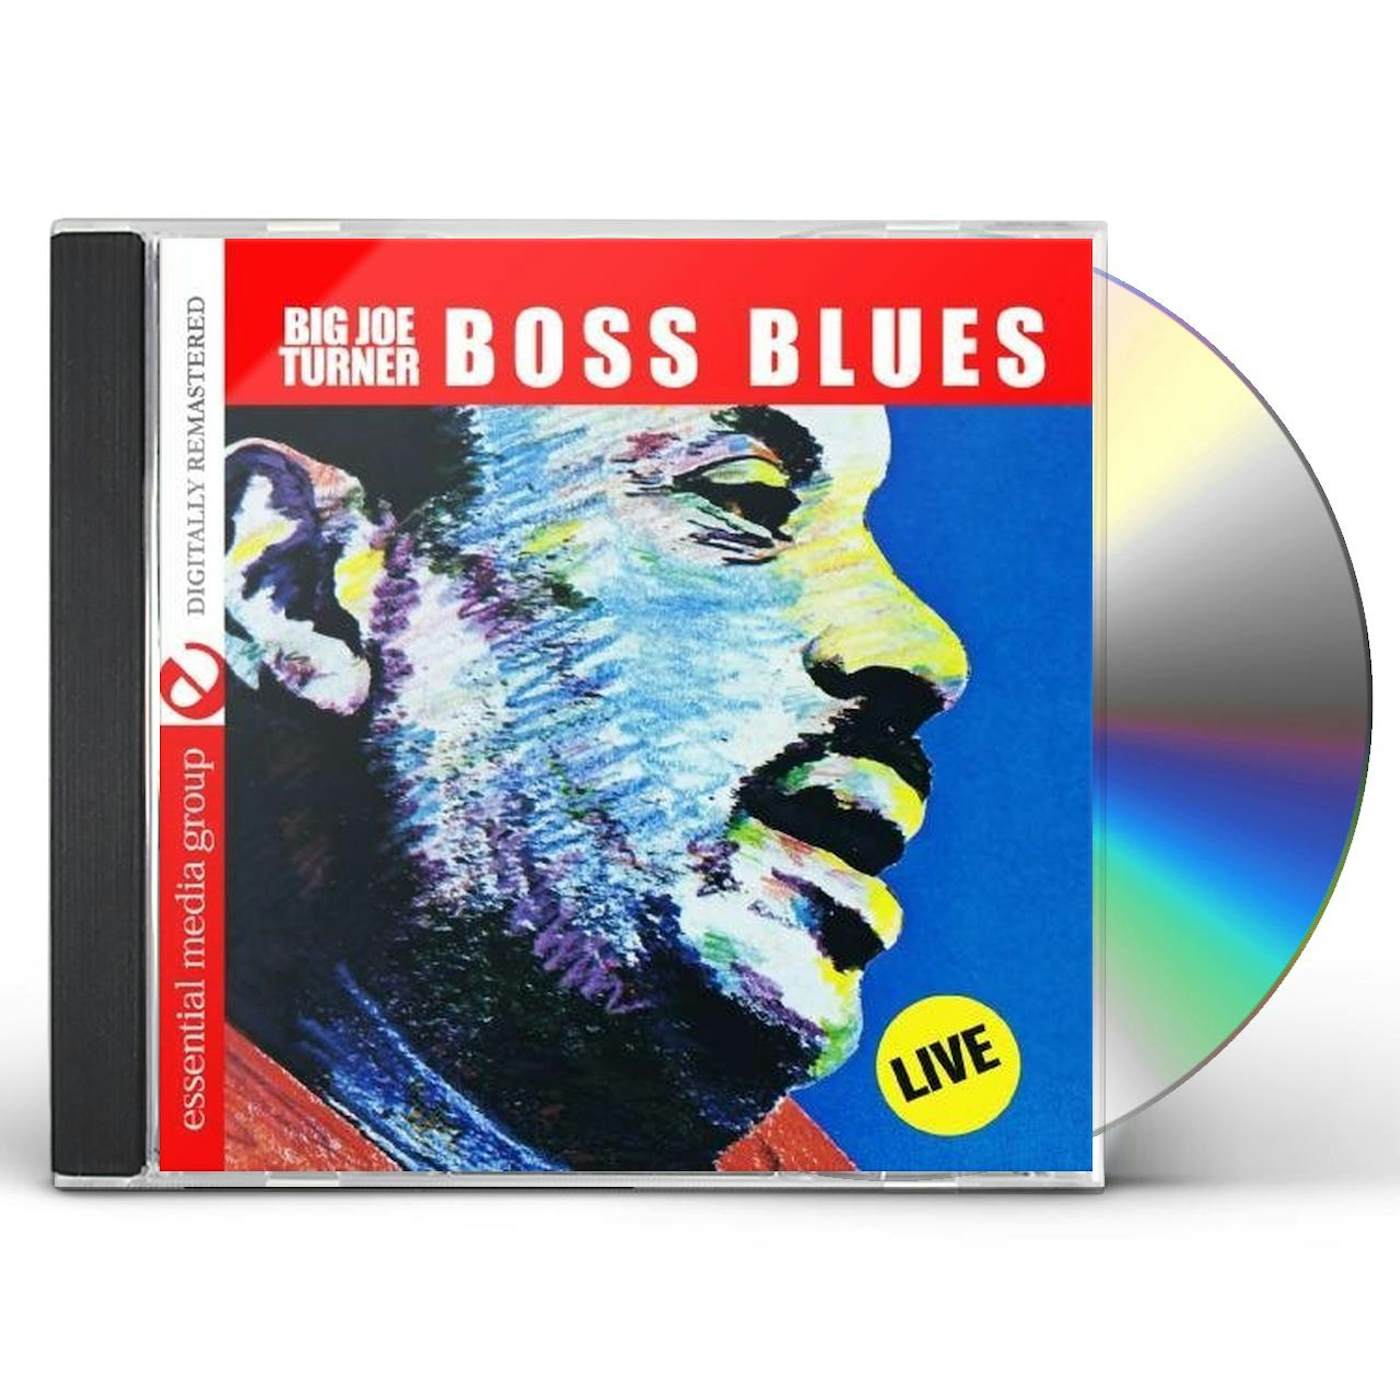 Big Joe Turner BOSS BLUES: LIVE CD